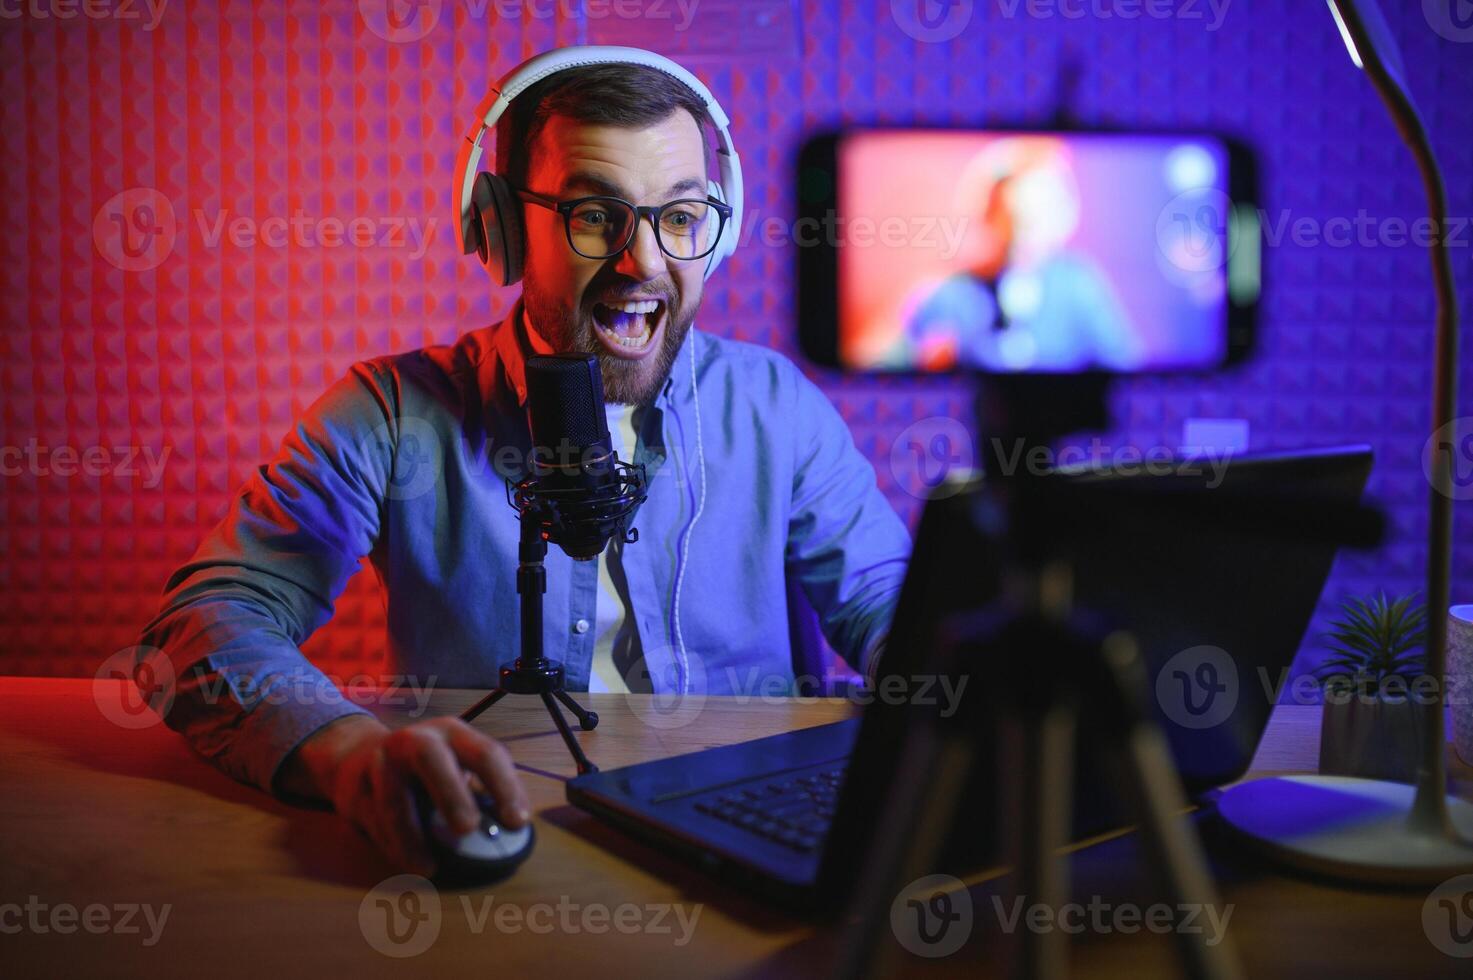 banderole est diffusion en ligne contenu, métaverse ar réalité virtuelle, jeu et esports concept.heureux homme joueur porter casque de musique compétition vidéo Jeu en ligne avec portable ordinateur dans coloré néon lumières. photo